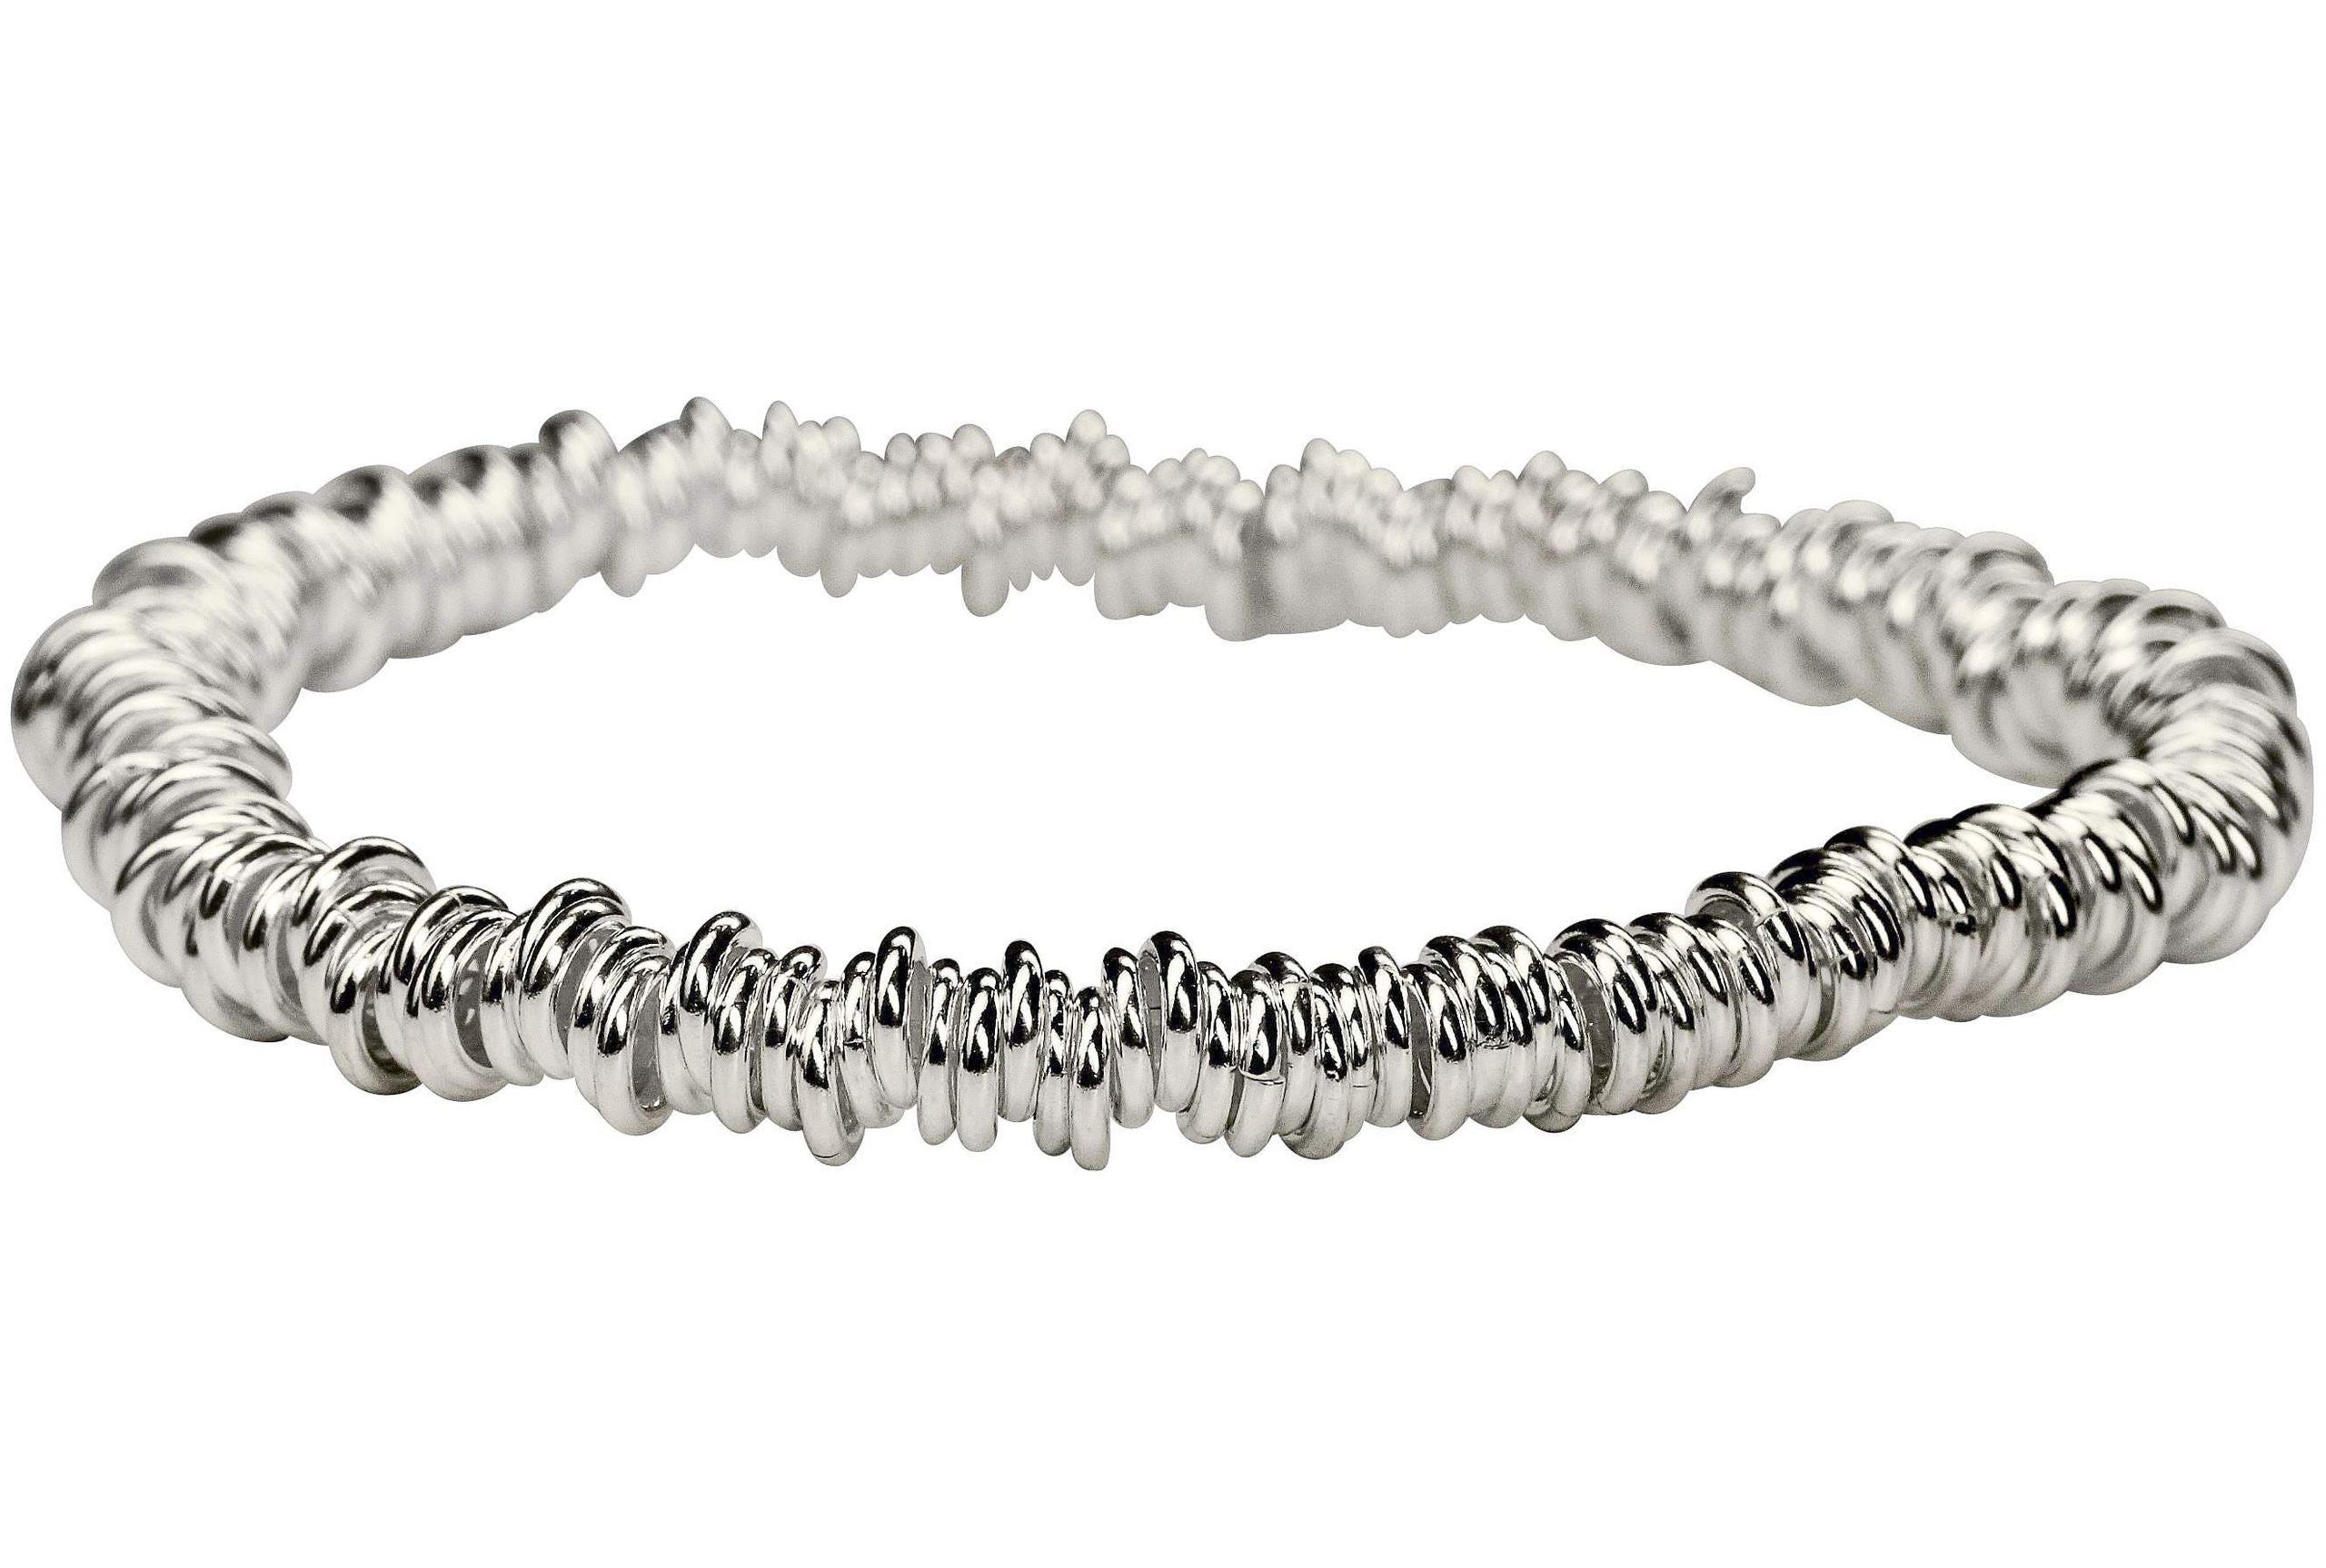 Ein Armband aus Silber für Damen aus vielen kleinen einzelnen Silberringen, die verschlussfrei auf ein Gummiband aufgefädelt sind.